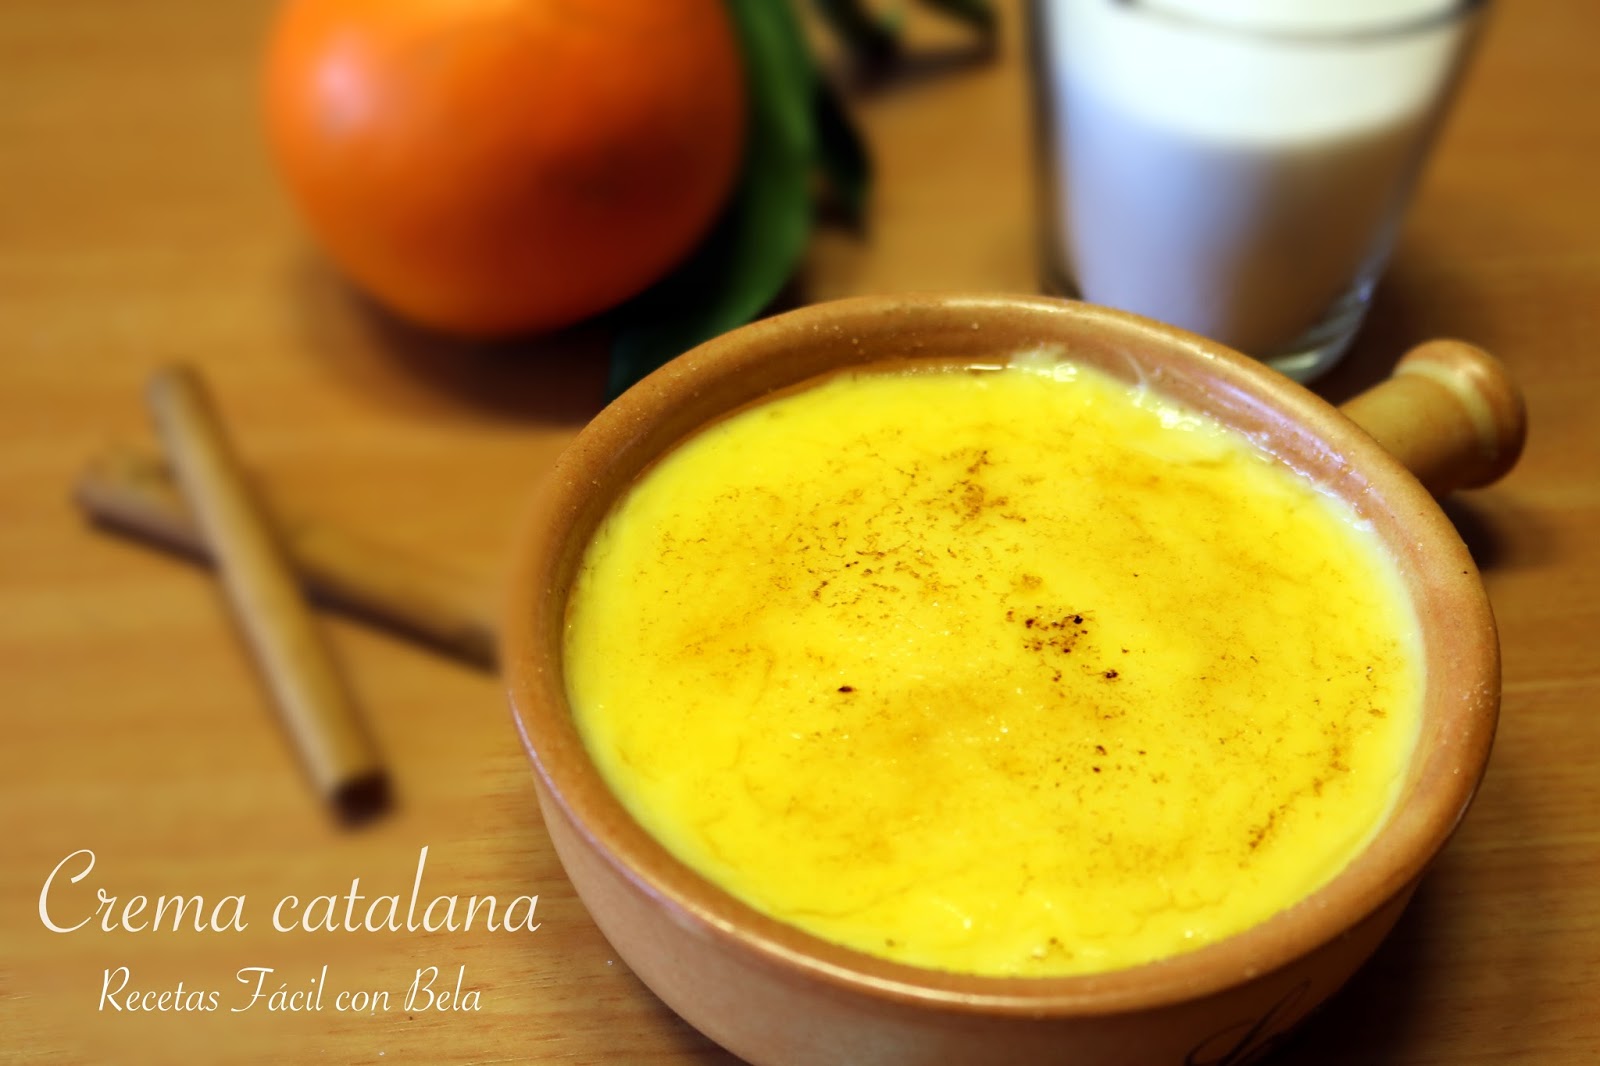 Caramelizar crema catalana u otros postres sin soplete. Trucos de rechupete  - De Rechupete